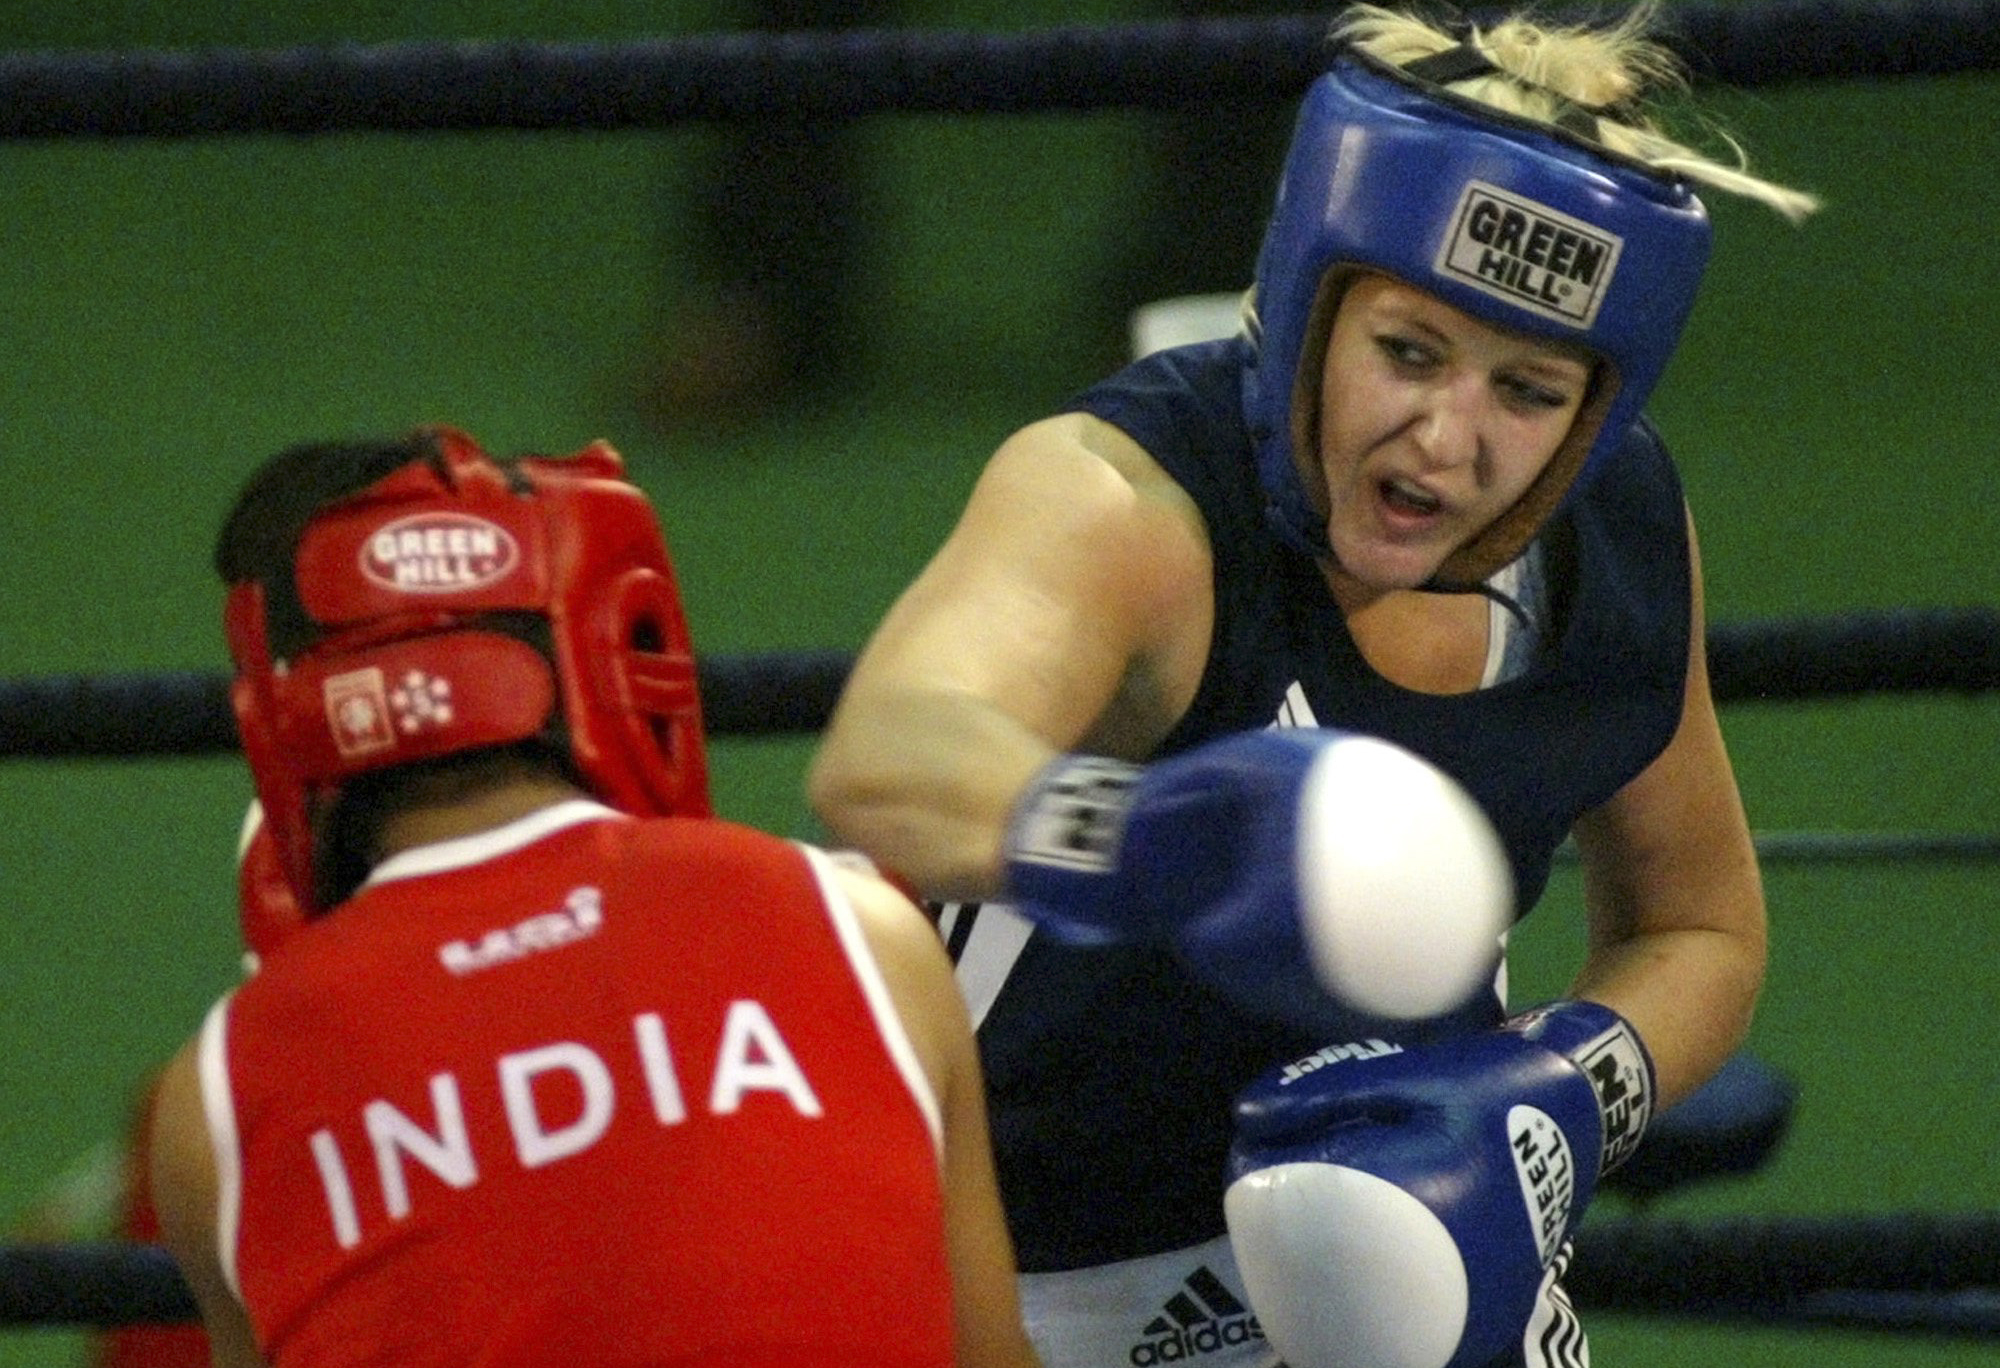 VM, Klara Svensson, boxning, Anna Laurell, Indien